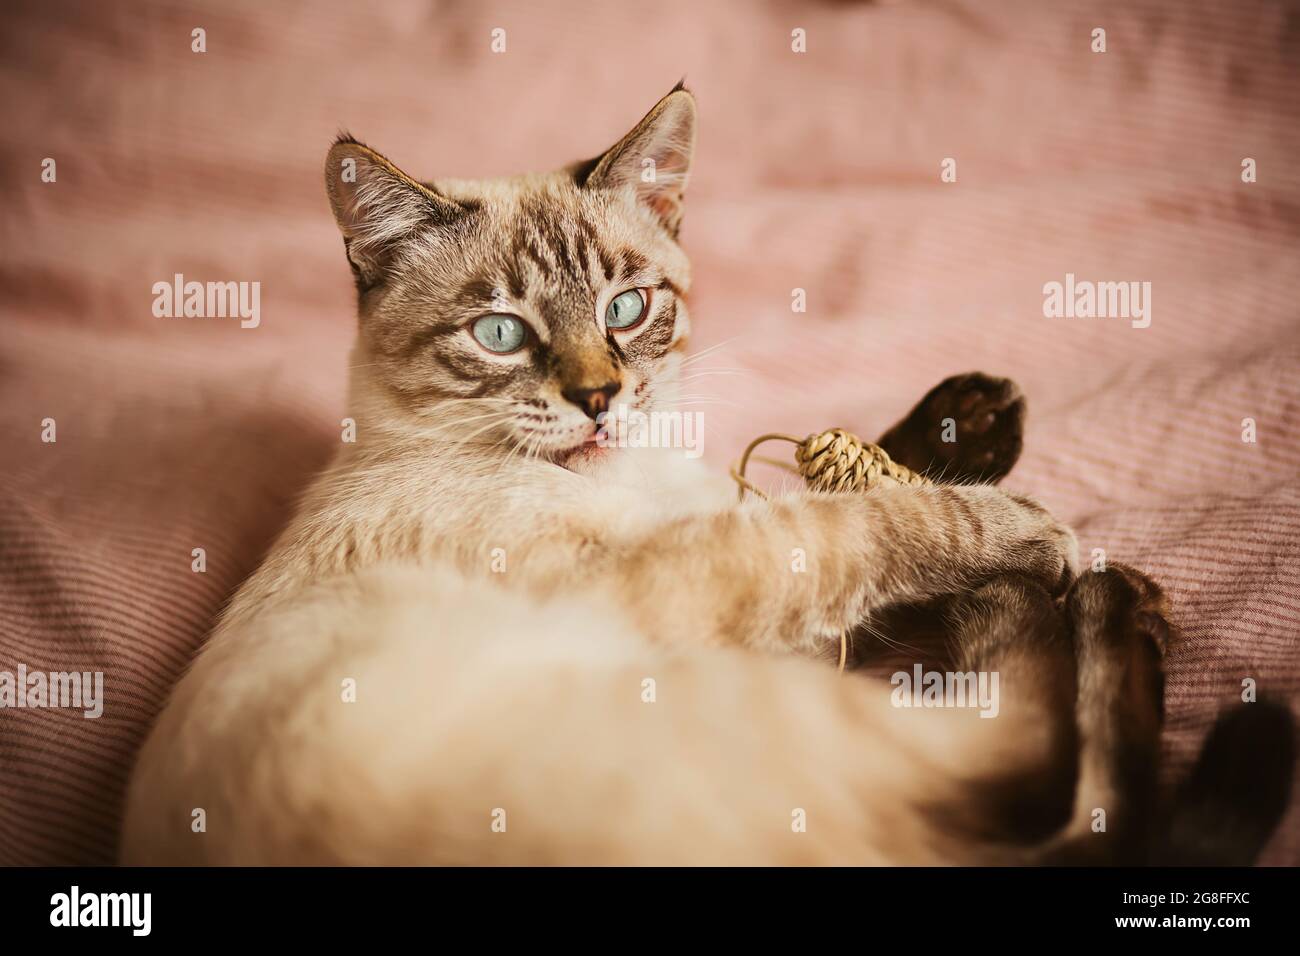 Un joli chaton thaïlandais rayé joue avec une souris en peluche et a coincé sa langue dans la surprise. Animaux de compagnie mignons et amusant avec un jouet. Banque D'Images